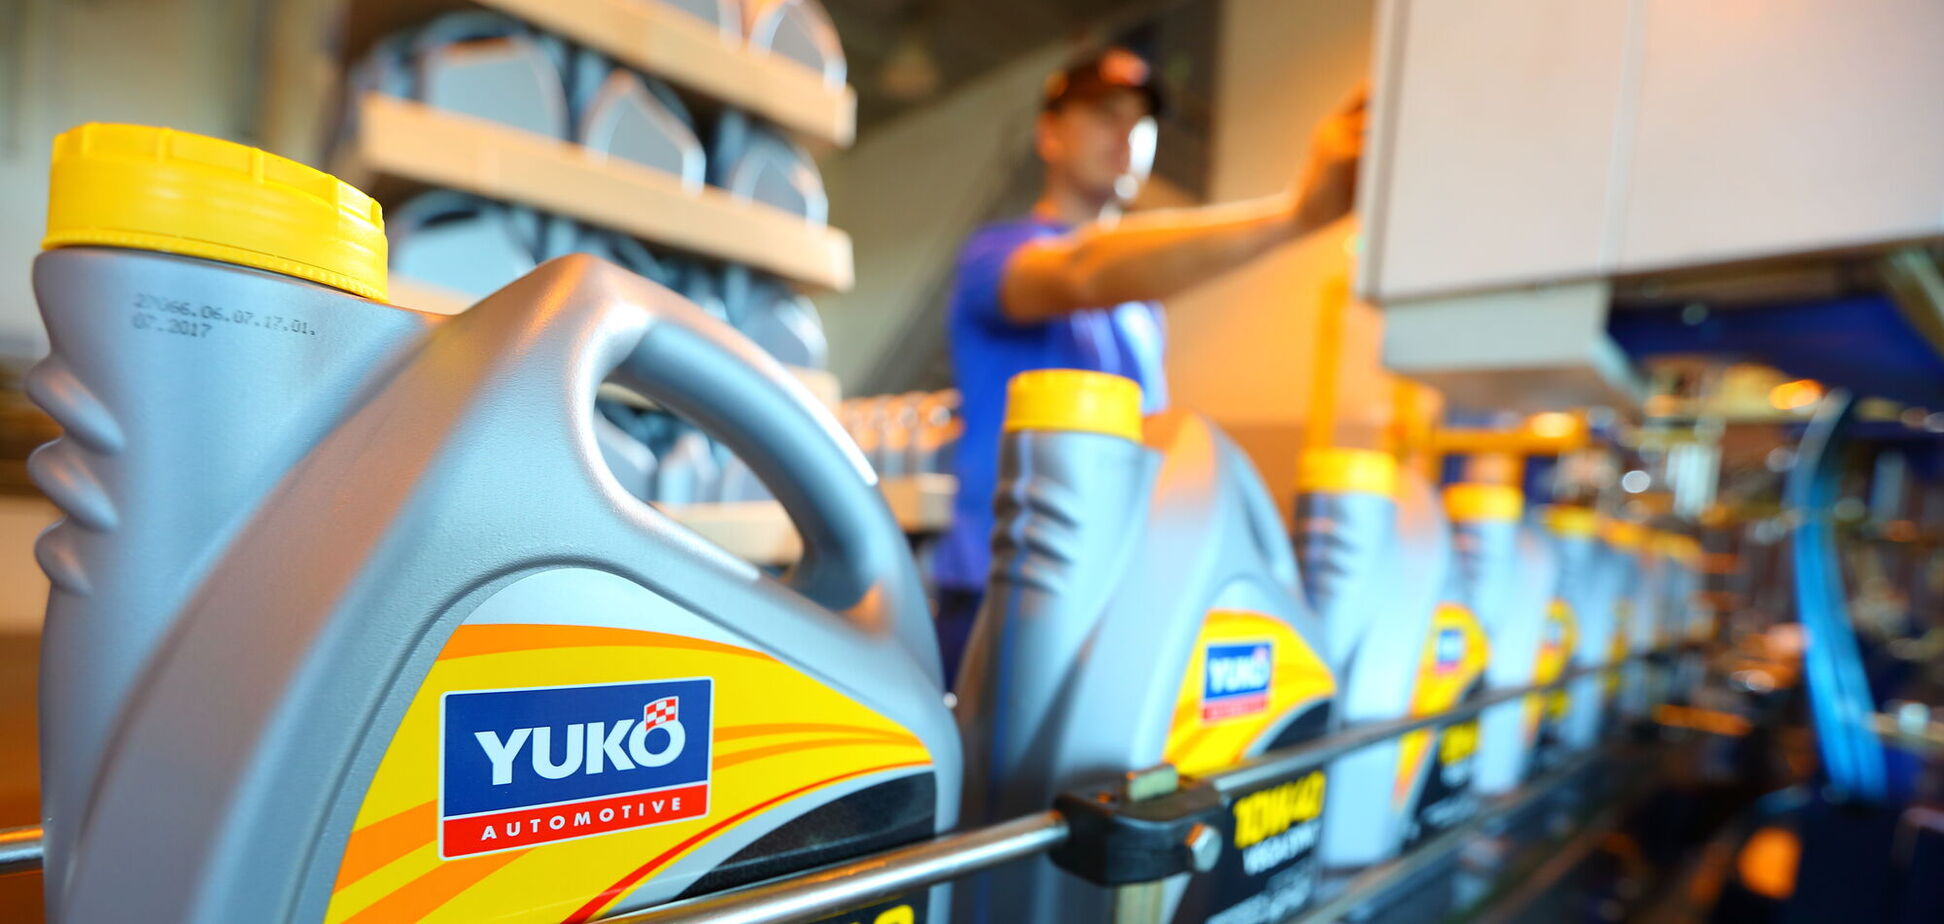 Лидер отрасли: завод по производству моторного масла Yuko получил престижную награду